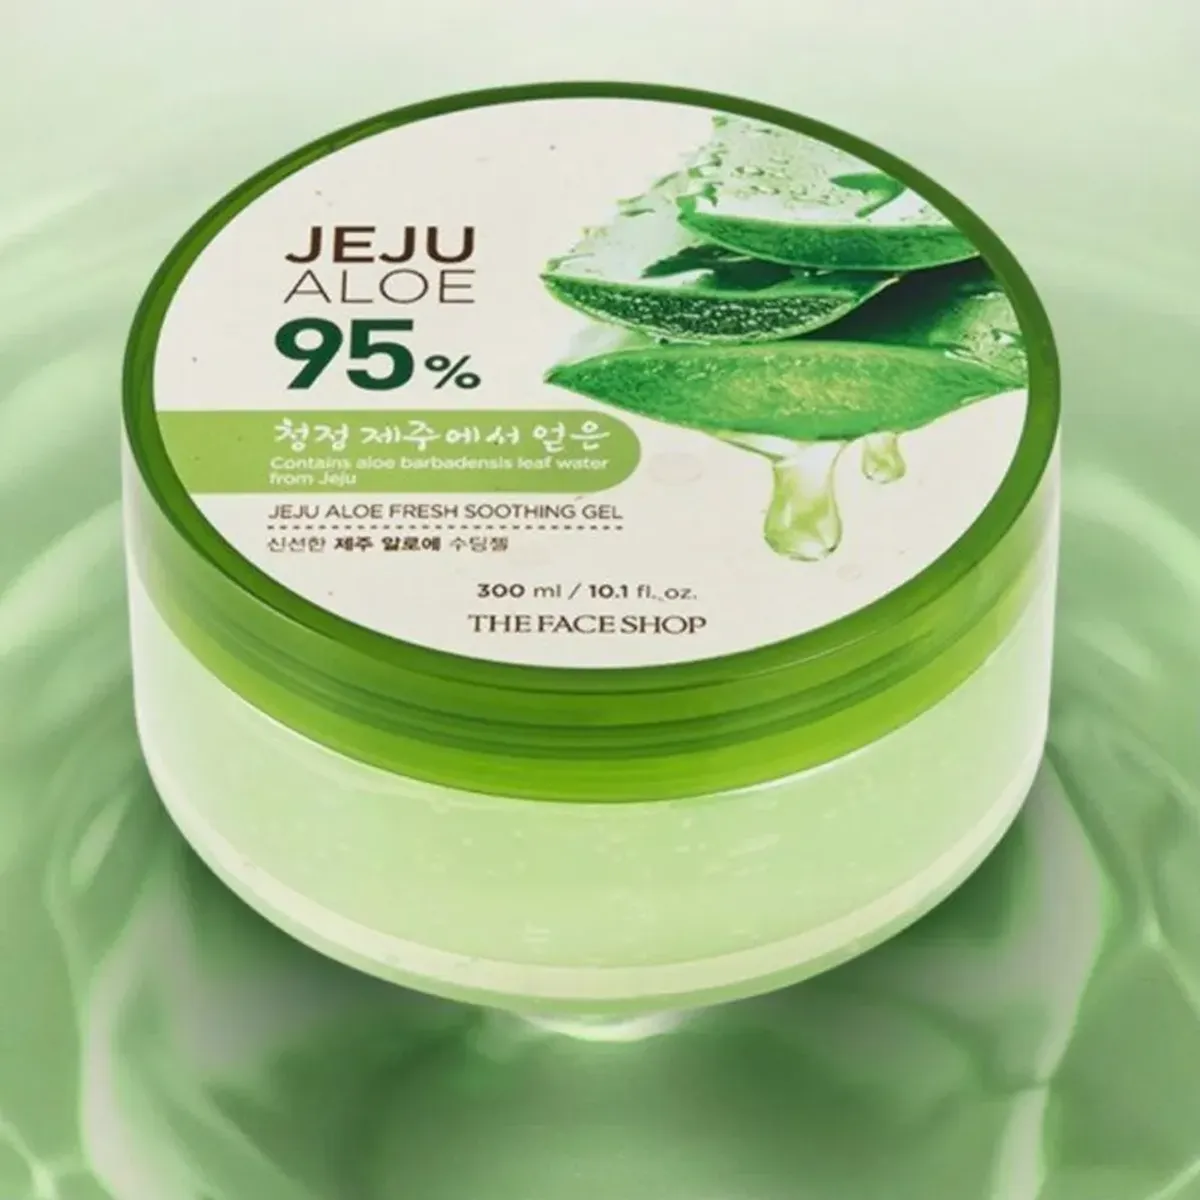 gel-duong-da-da-nang-jeju-aloe-fresh-soothing-gel-300ml-5